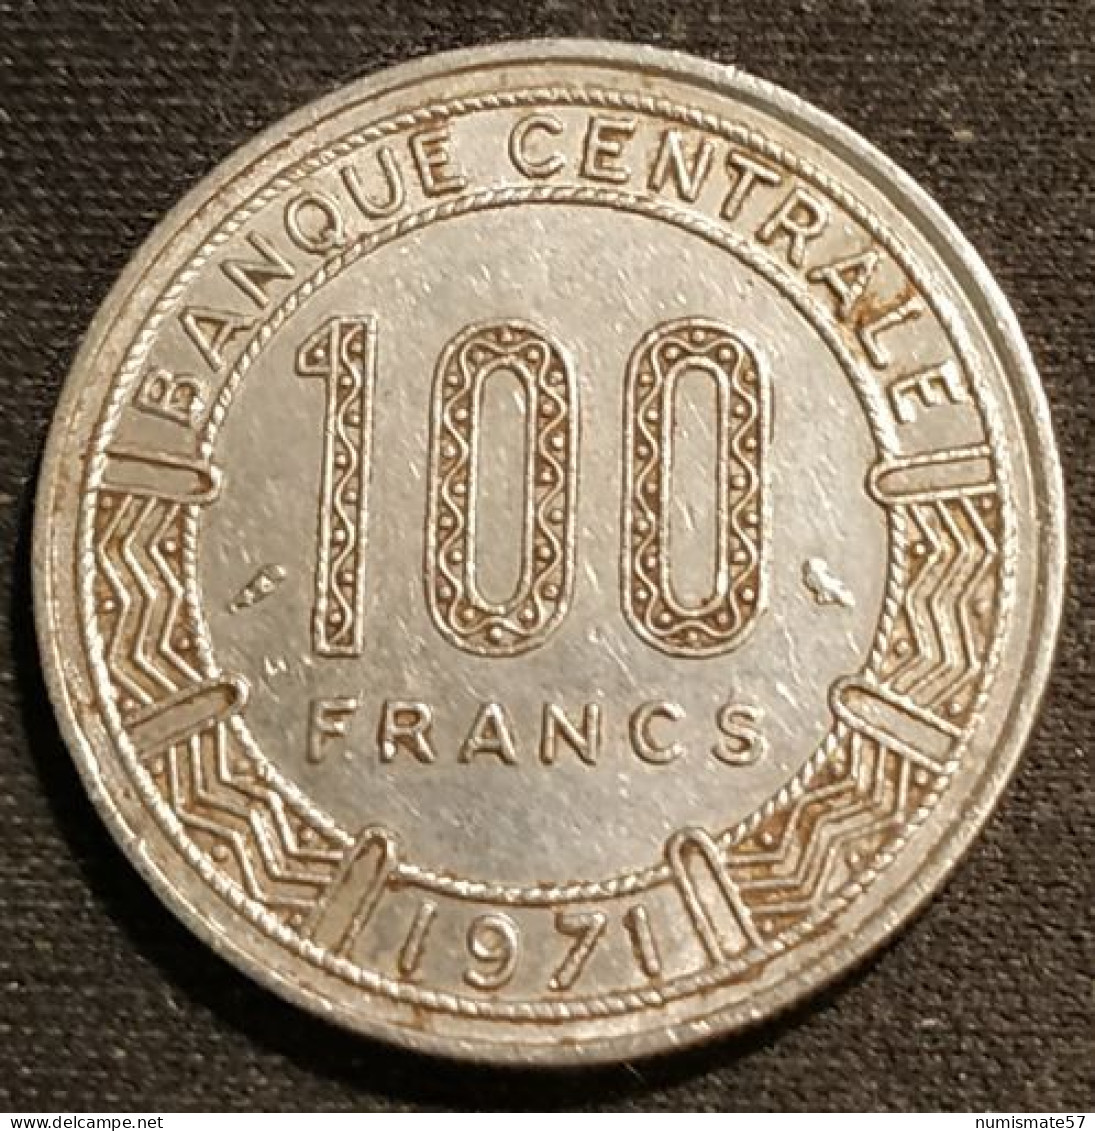 CAMEROUN - 100 FRANCS 1971 - KM 15 - Cameroon